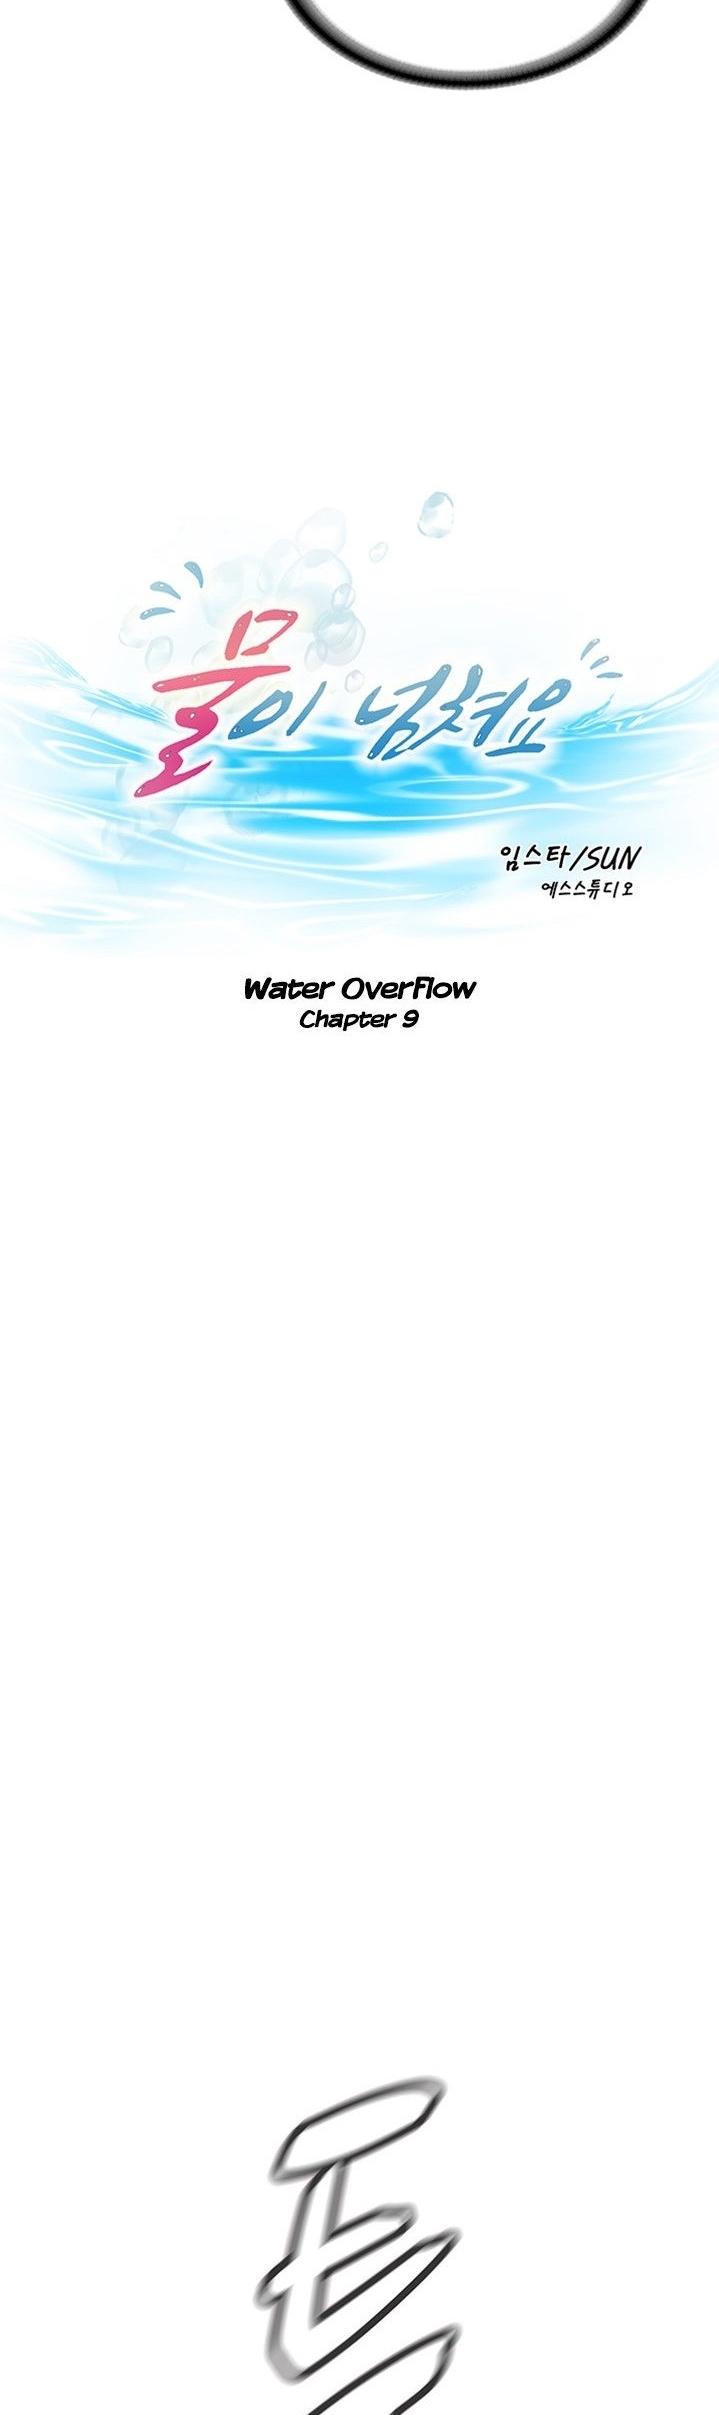 Water Overflow